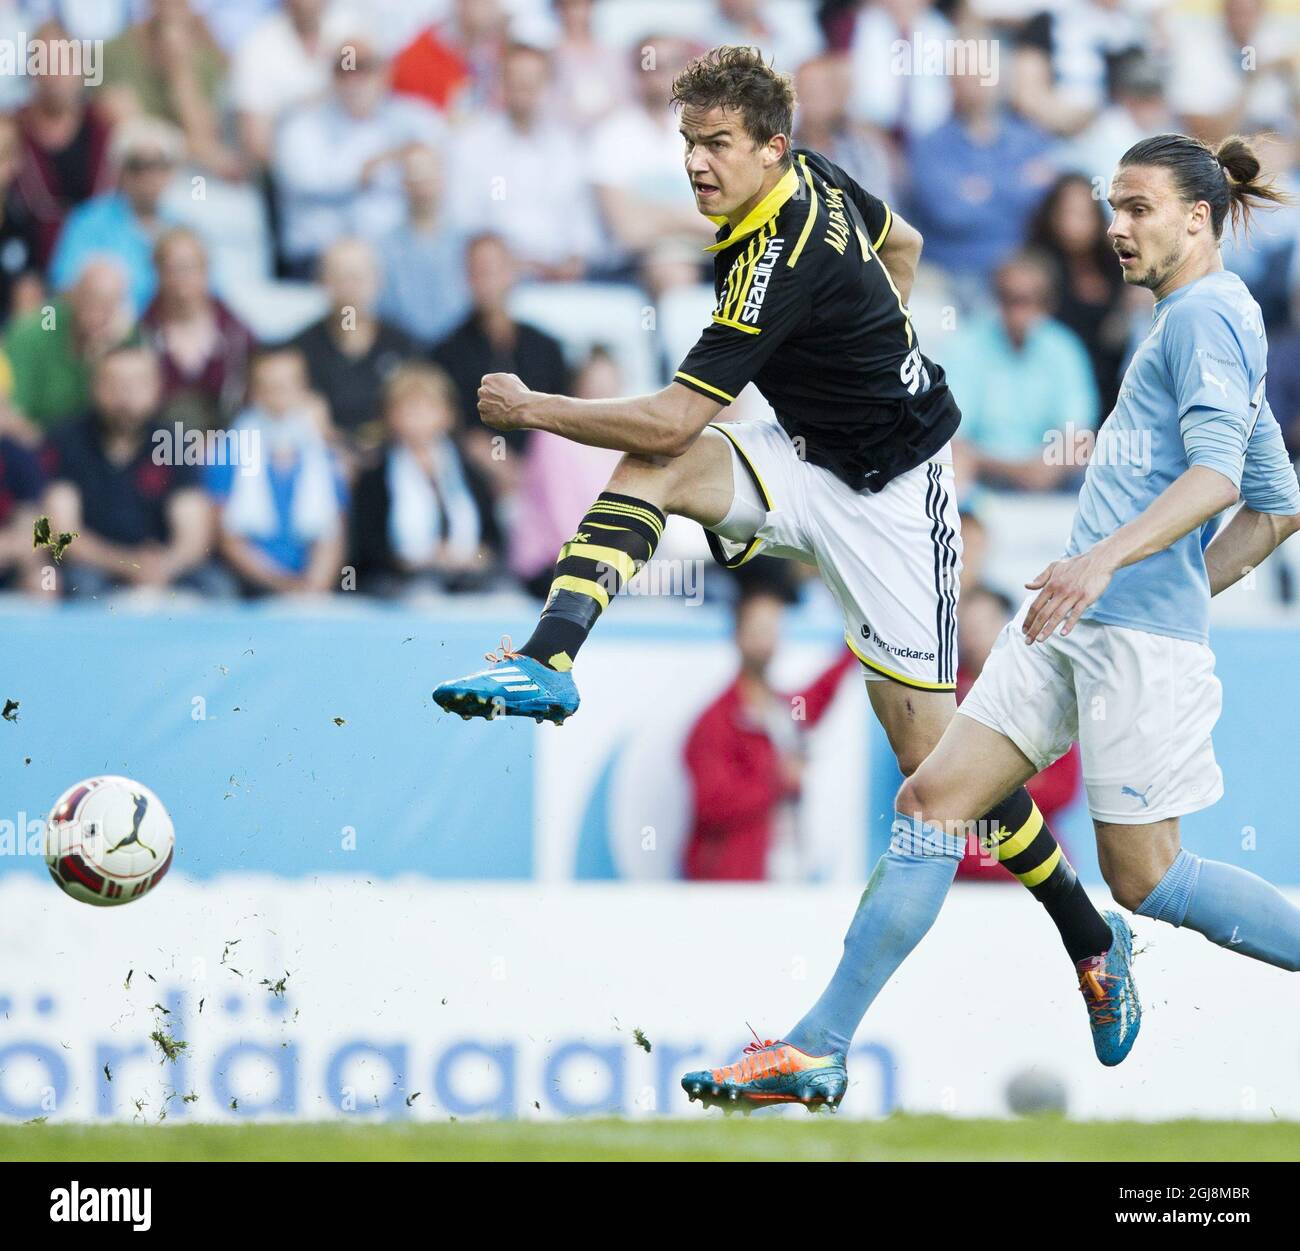 MALMO 2014-05-26 AIK:s Eero Markkanen en acción en un partido entre AIK och  Malmo FF en Swedbank Stadion en Malmo, Suecia 26 de mayo de 2014. Markkanen  ha sido transferido al Real